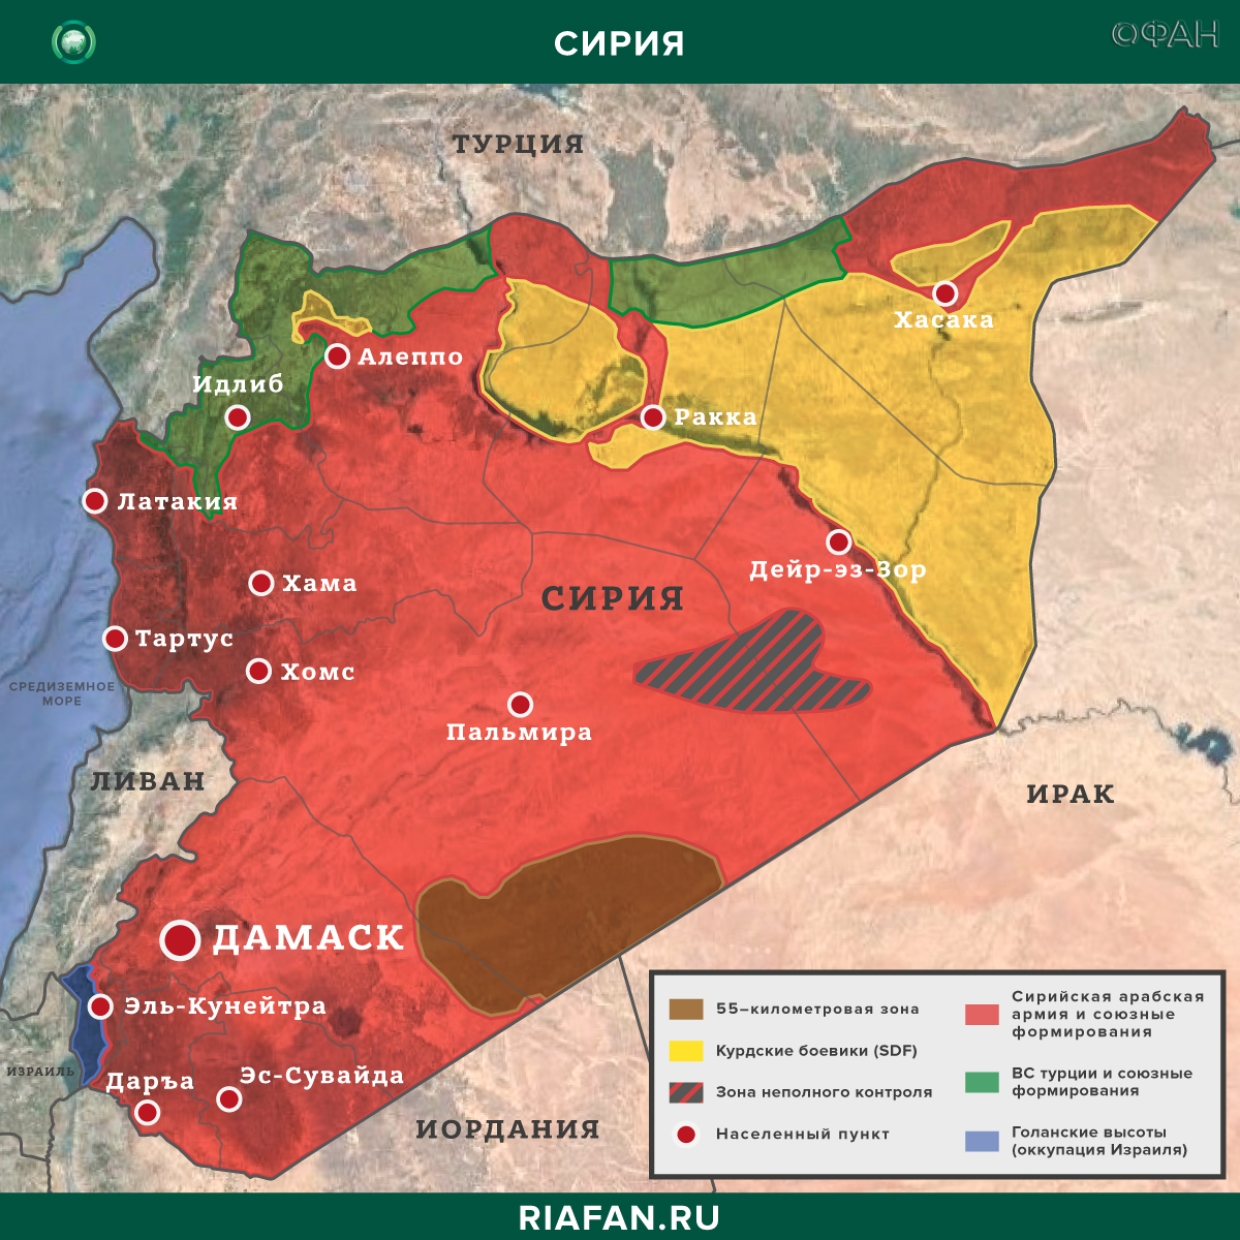 Noticias de Siria 10 Febrero 22.30: в Идлибе нейтрализованы 148 yihadistas, курдские боевики пополняют ряды в Хасаке